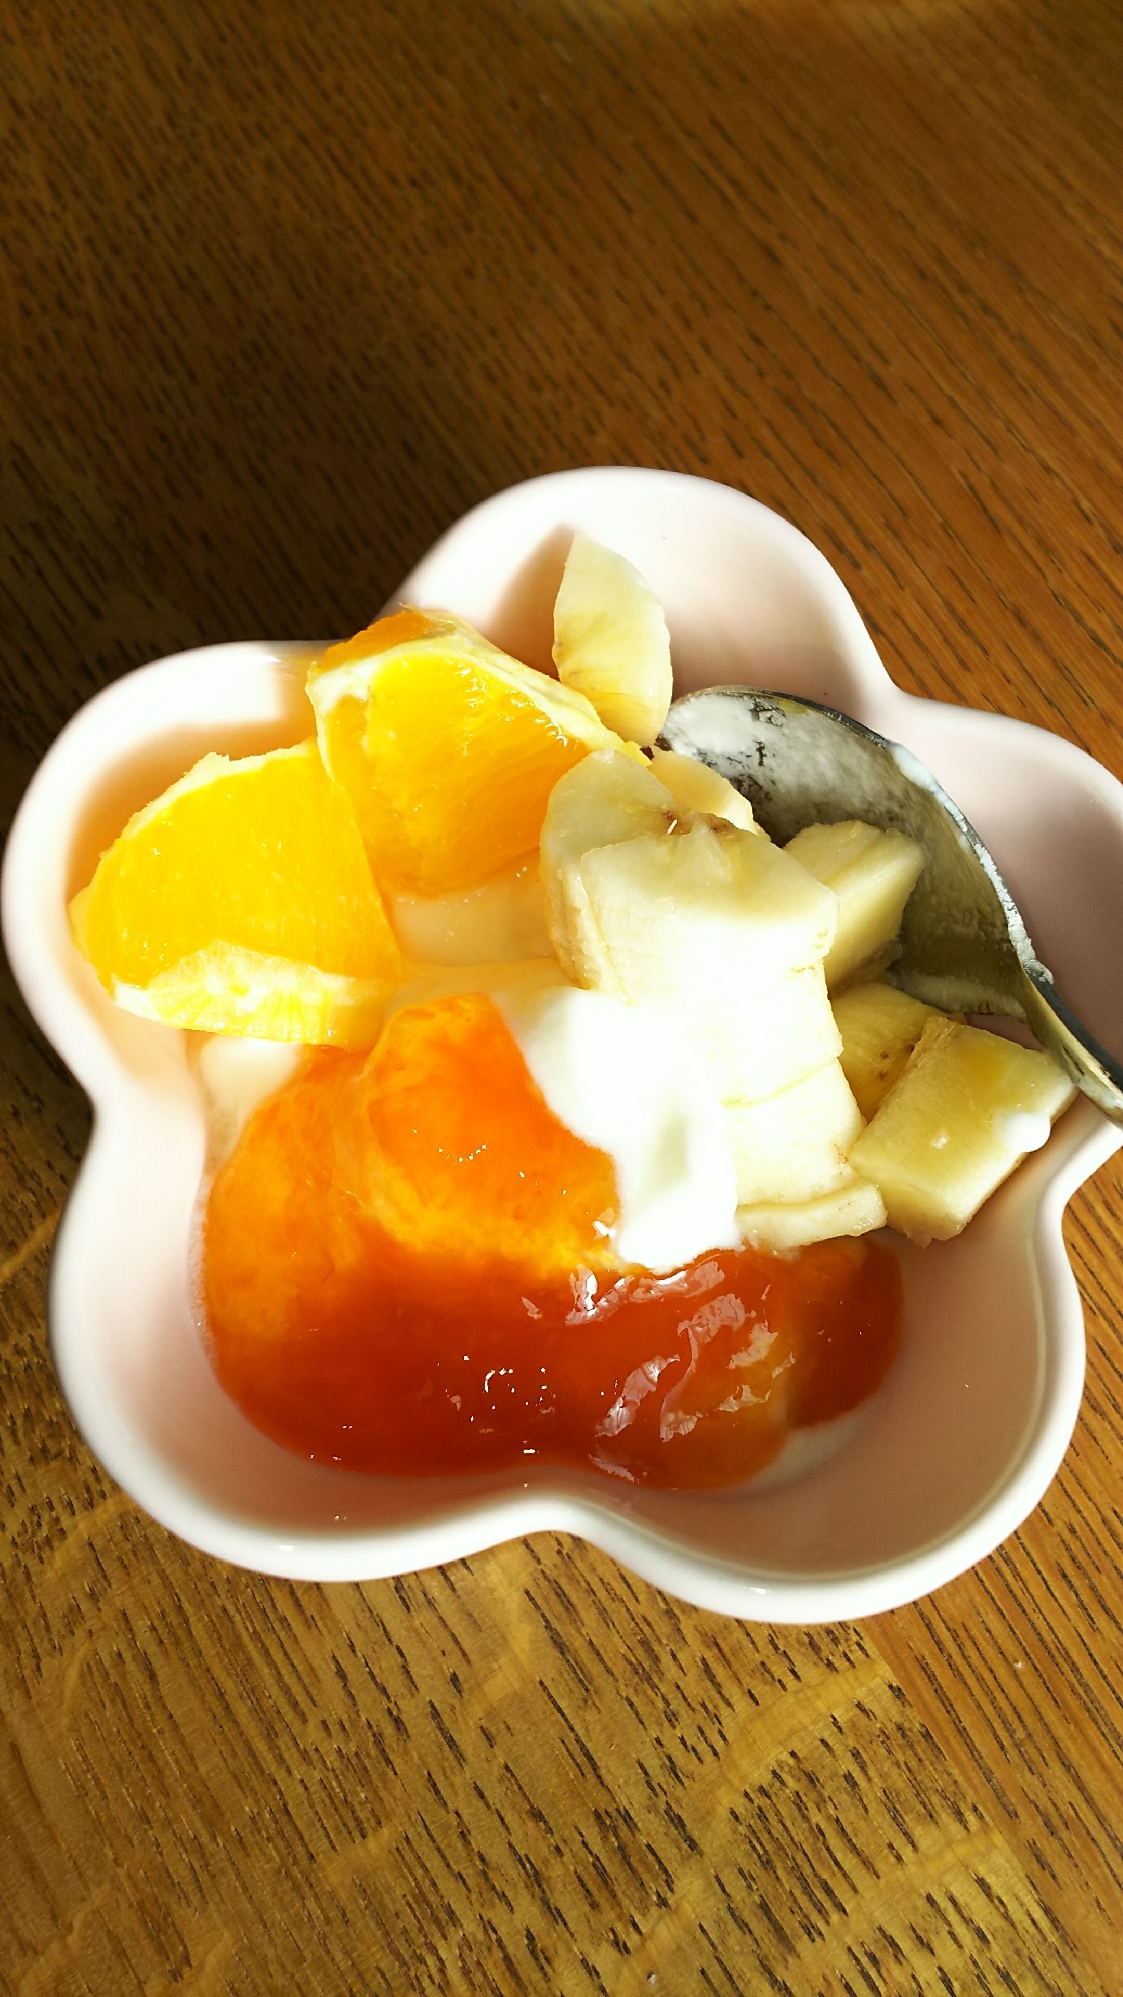 オレンジ&バナナ&杏のヨーグルト